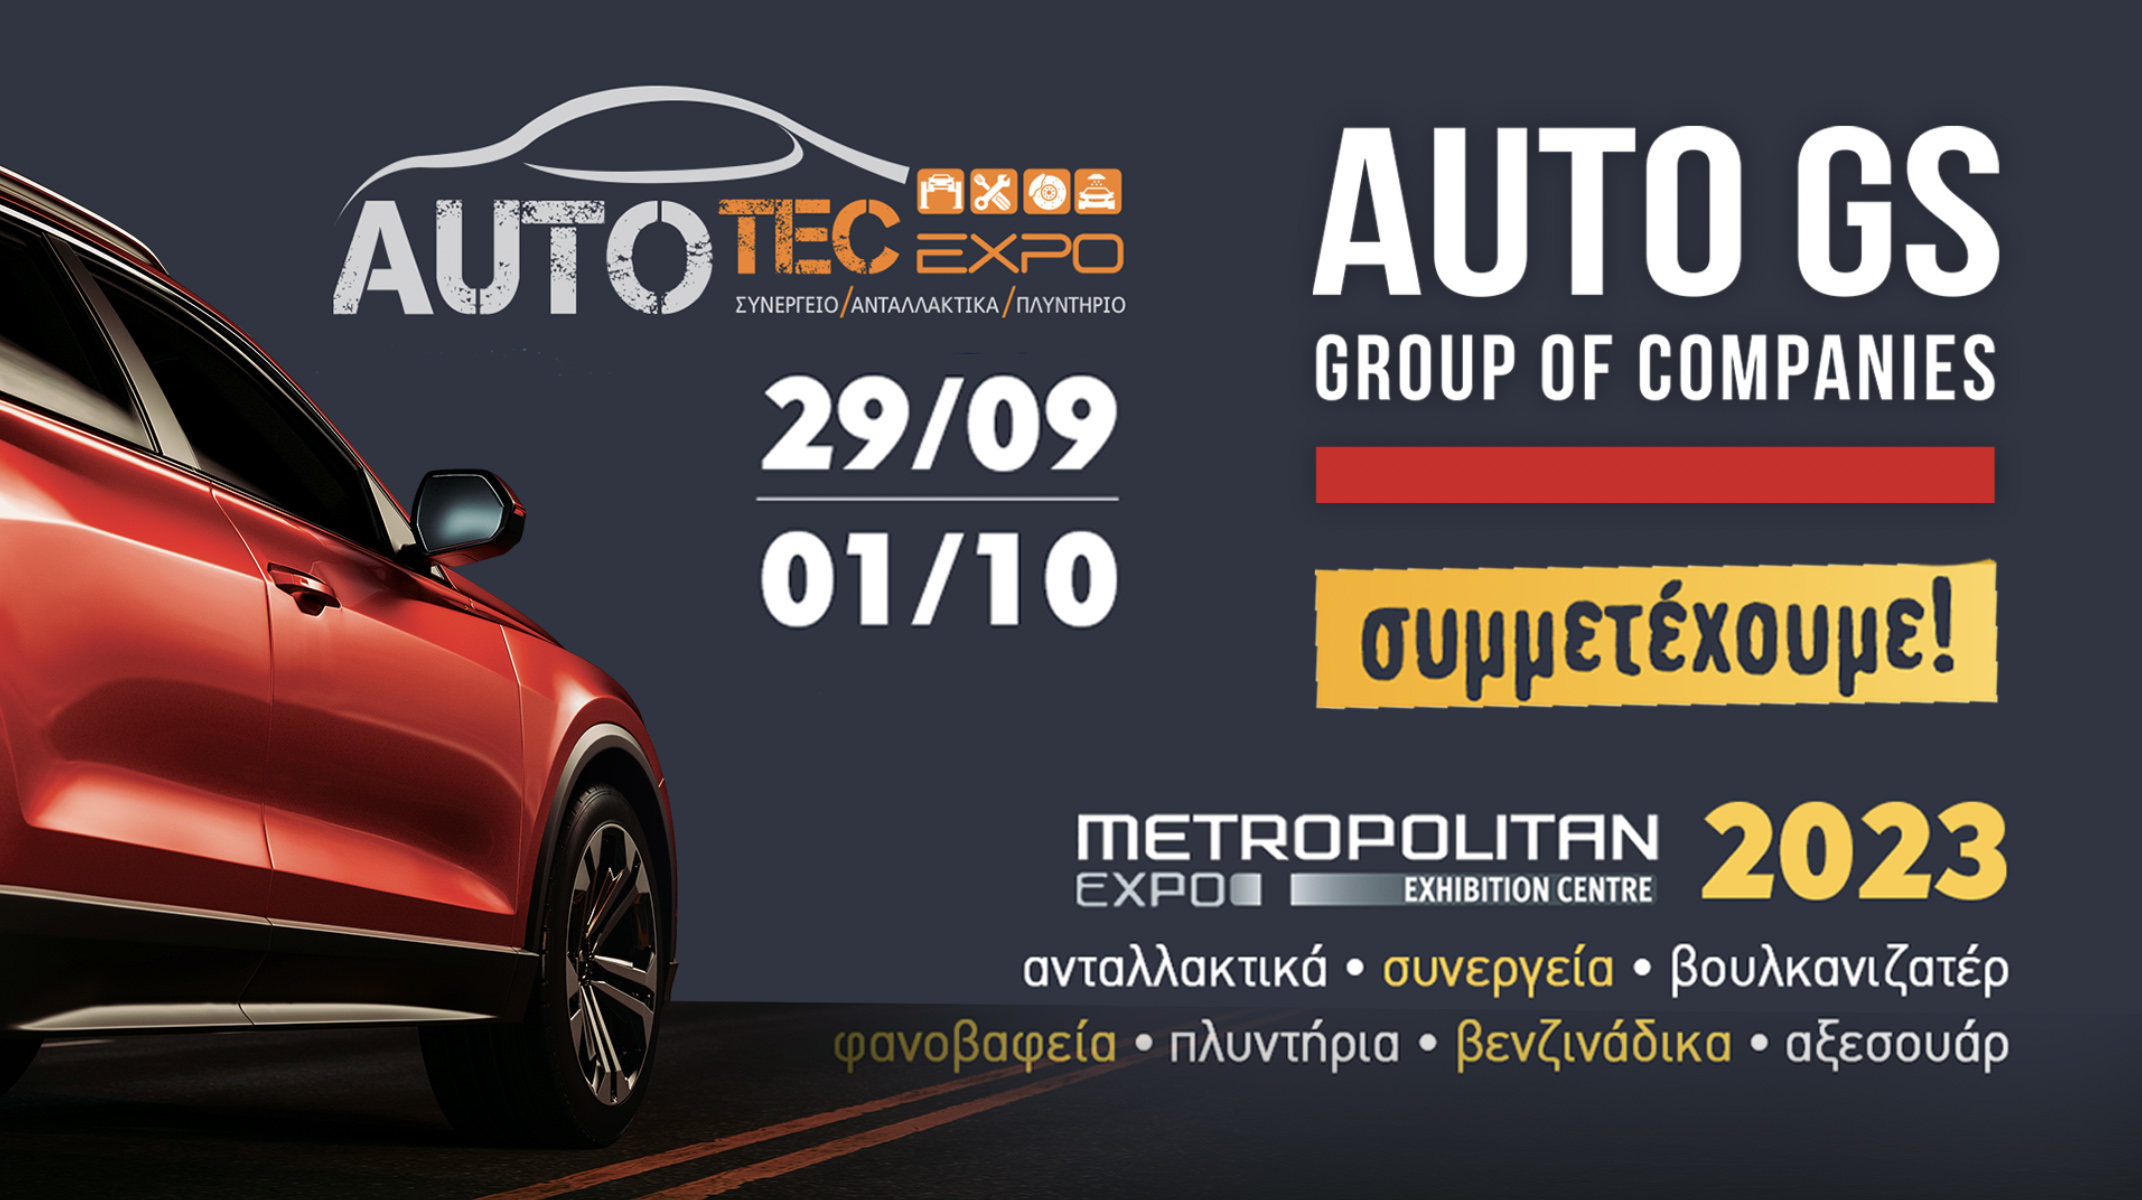 Autotec Expo 2023